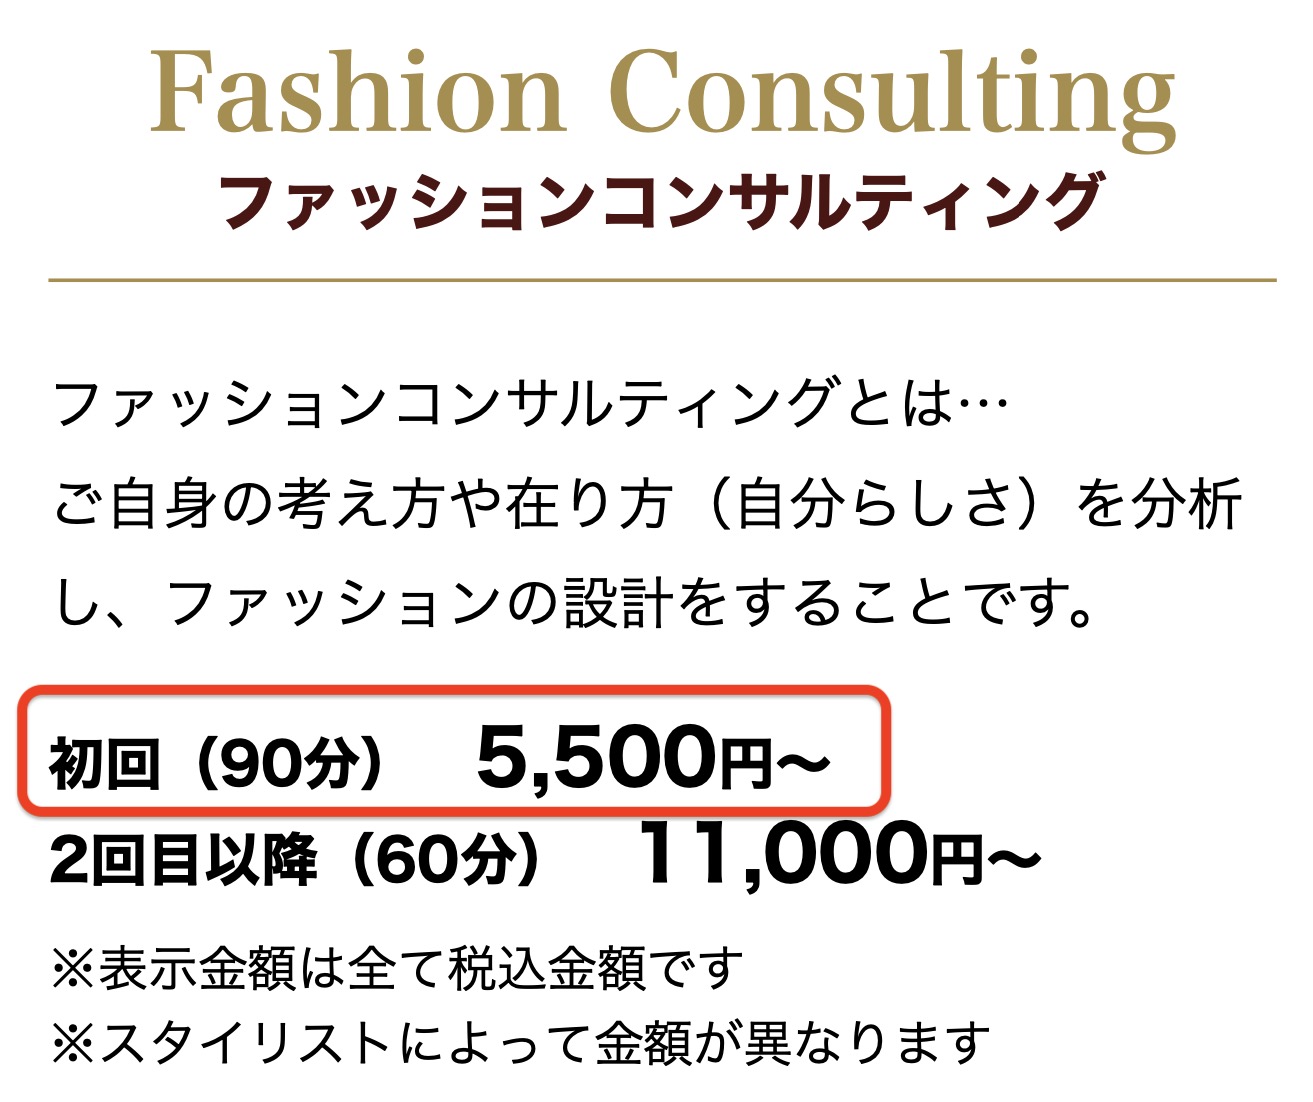 ファッションスタイリストジャパン「ファッションコンサルティング」料金